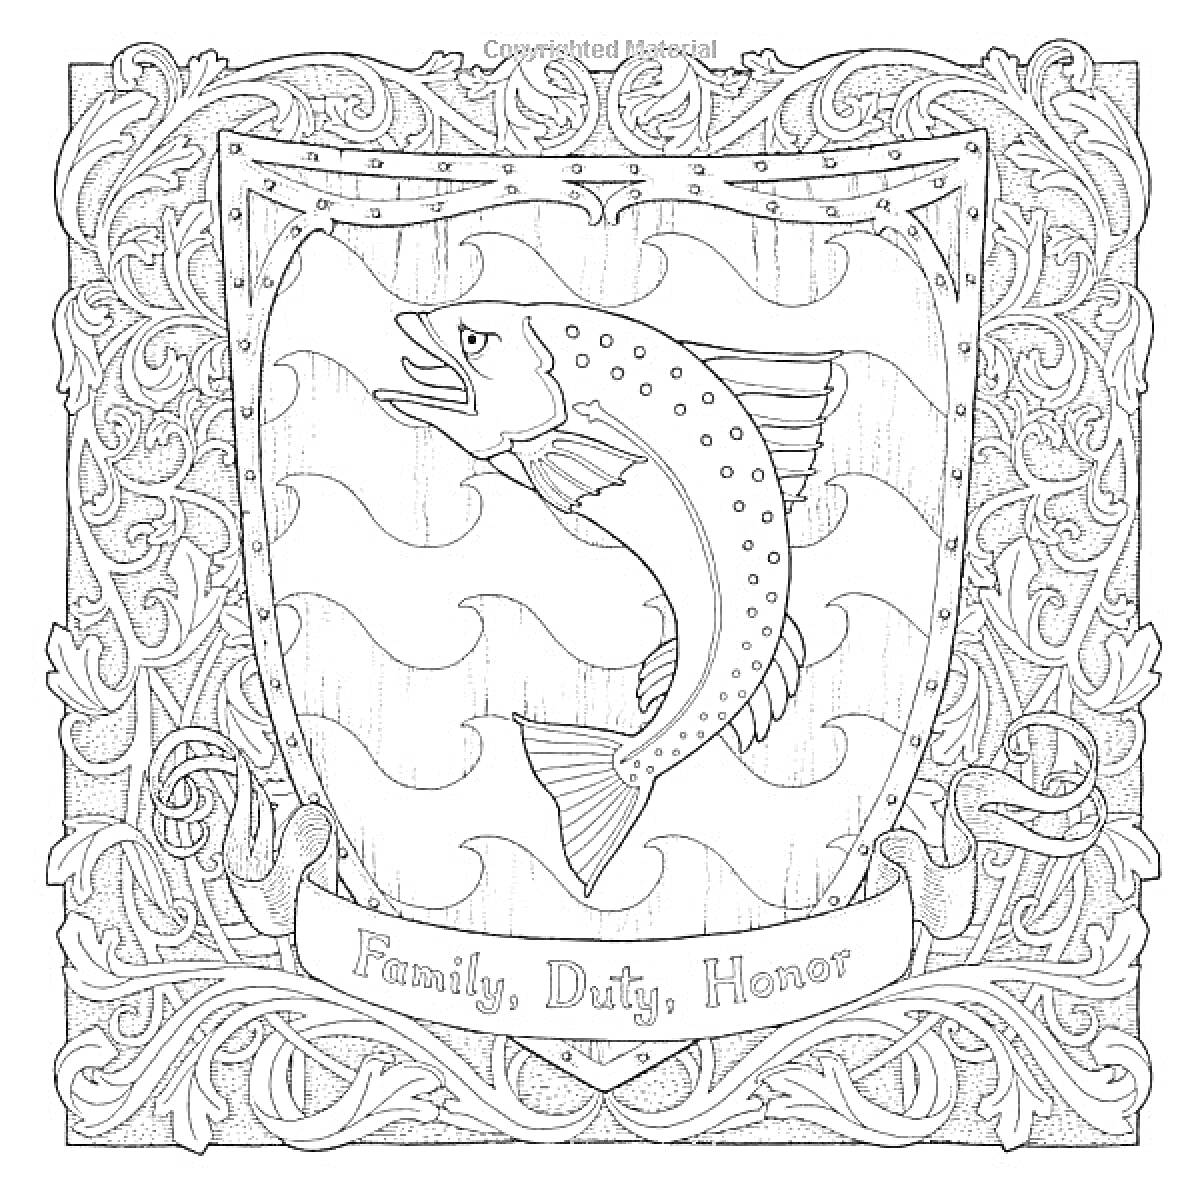 Герб дома Талли из Водоплавающего с девизом «Семья, Долг, Честь», оформленный в узорчатой рамке